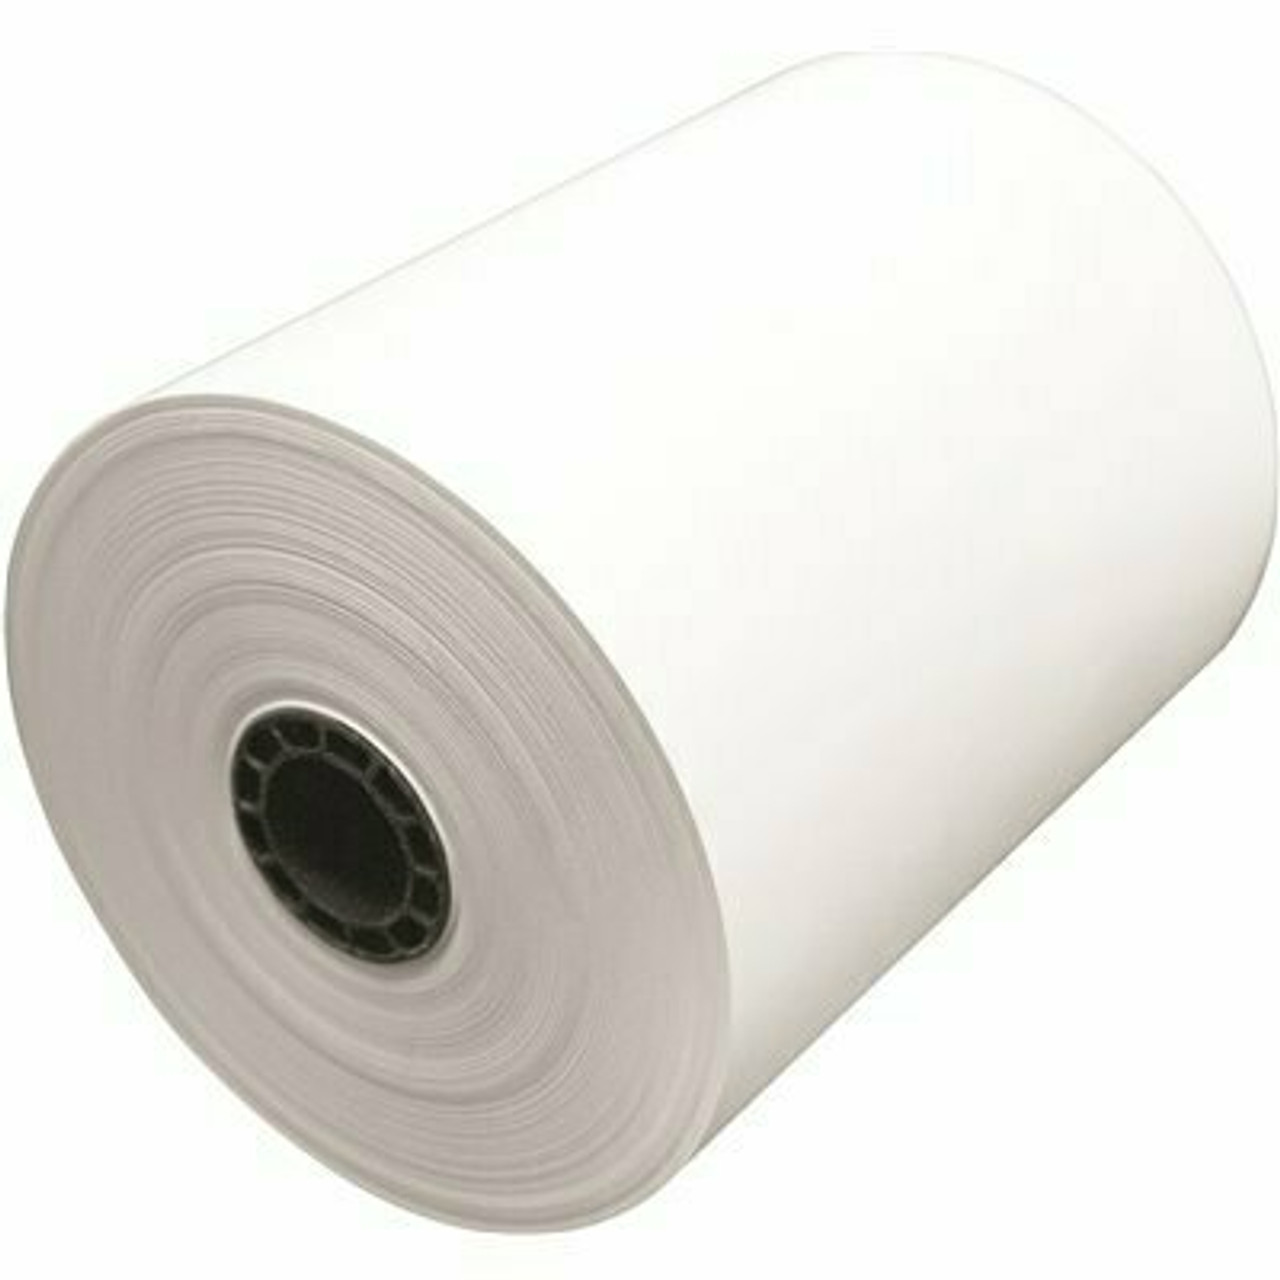 Karat Thermal Paper Rolls, White (50 Per Case)